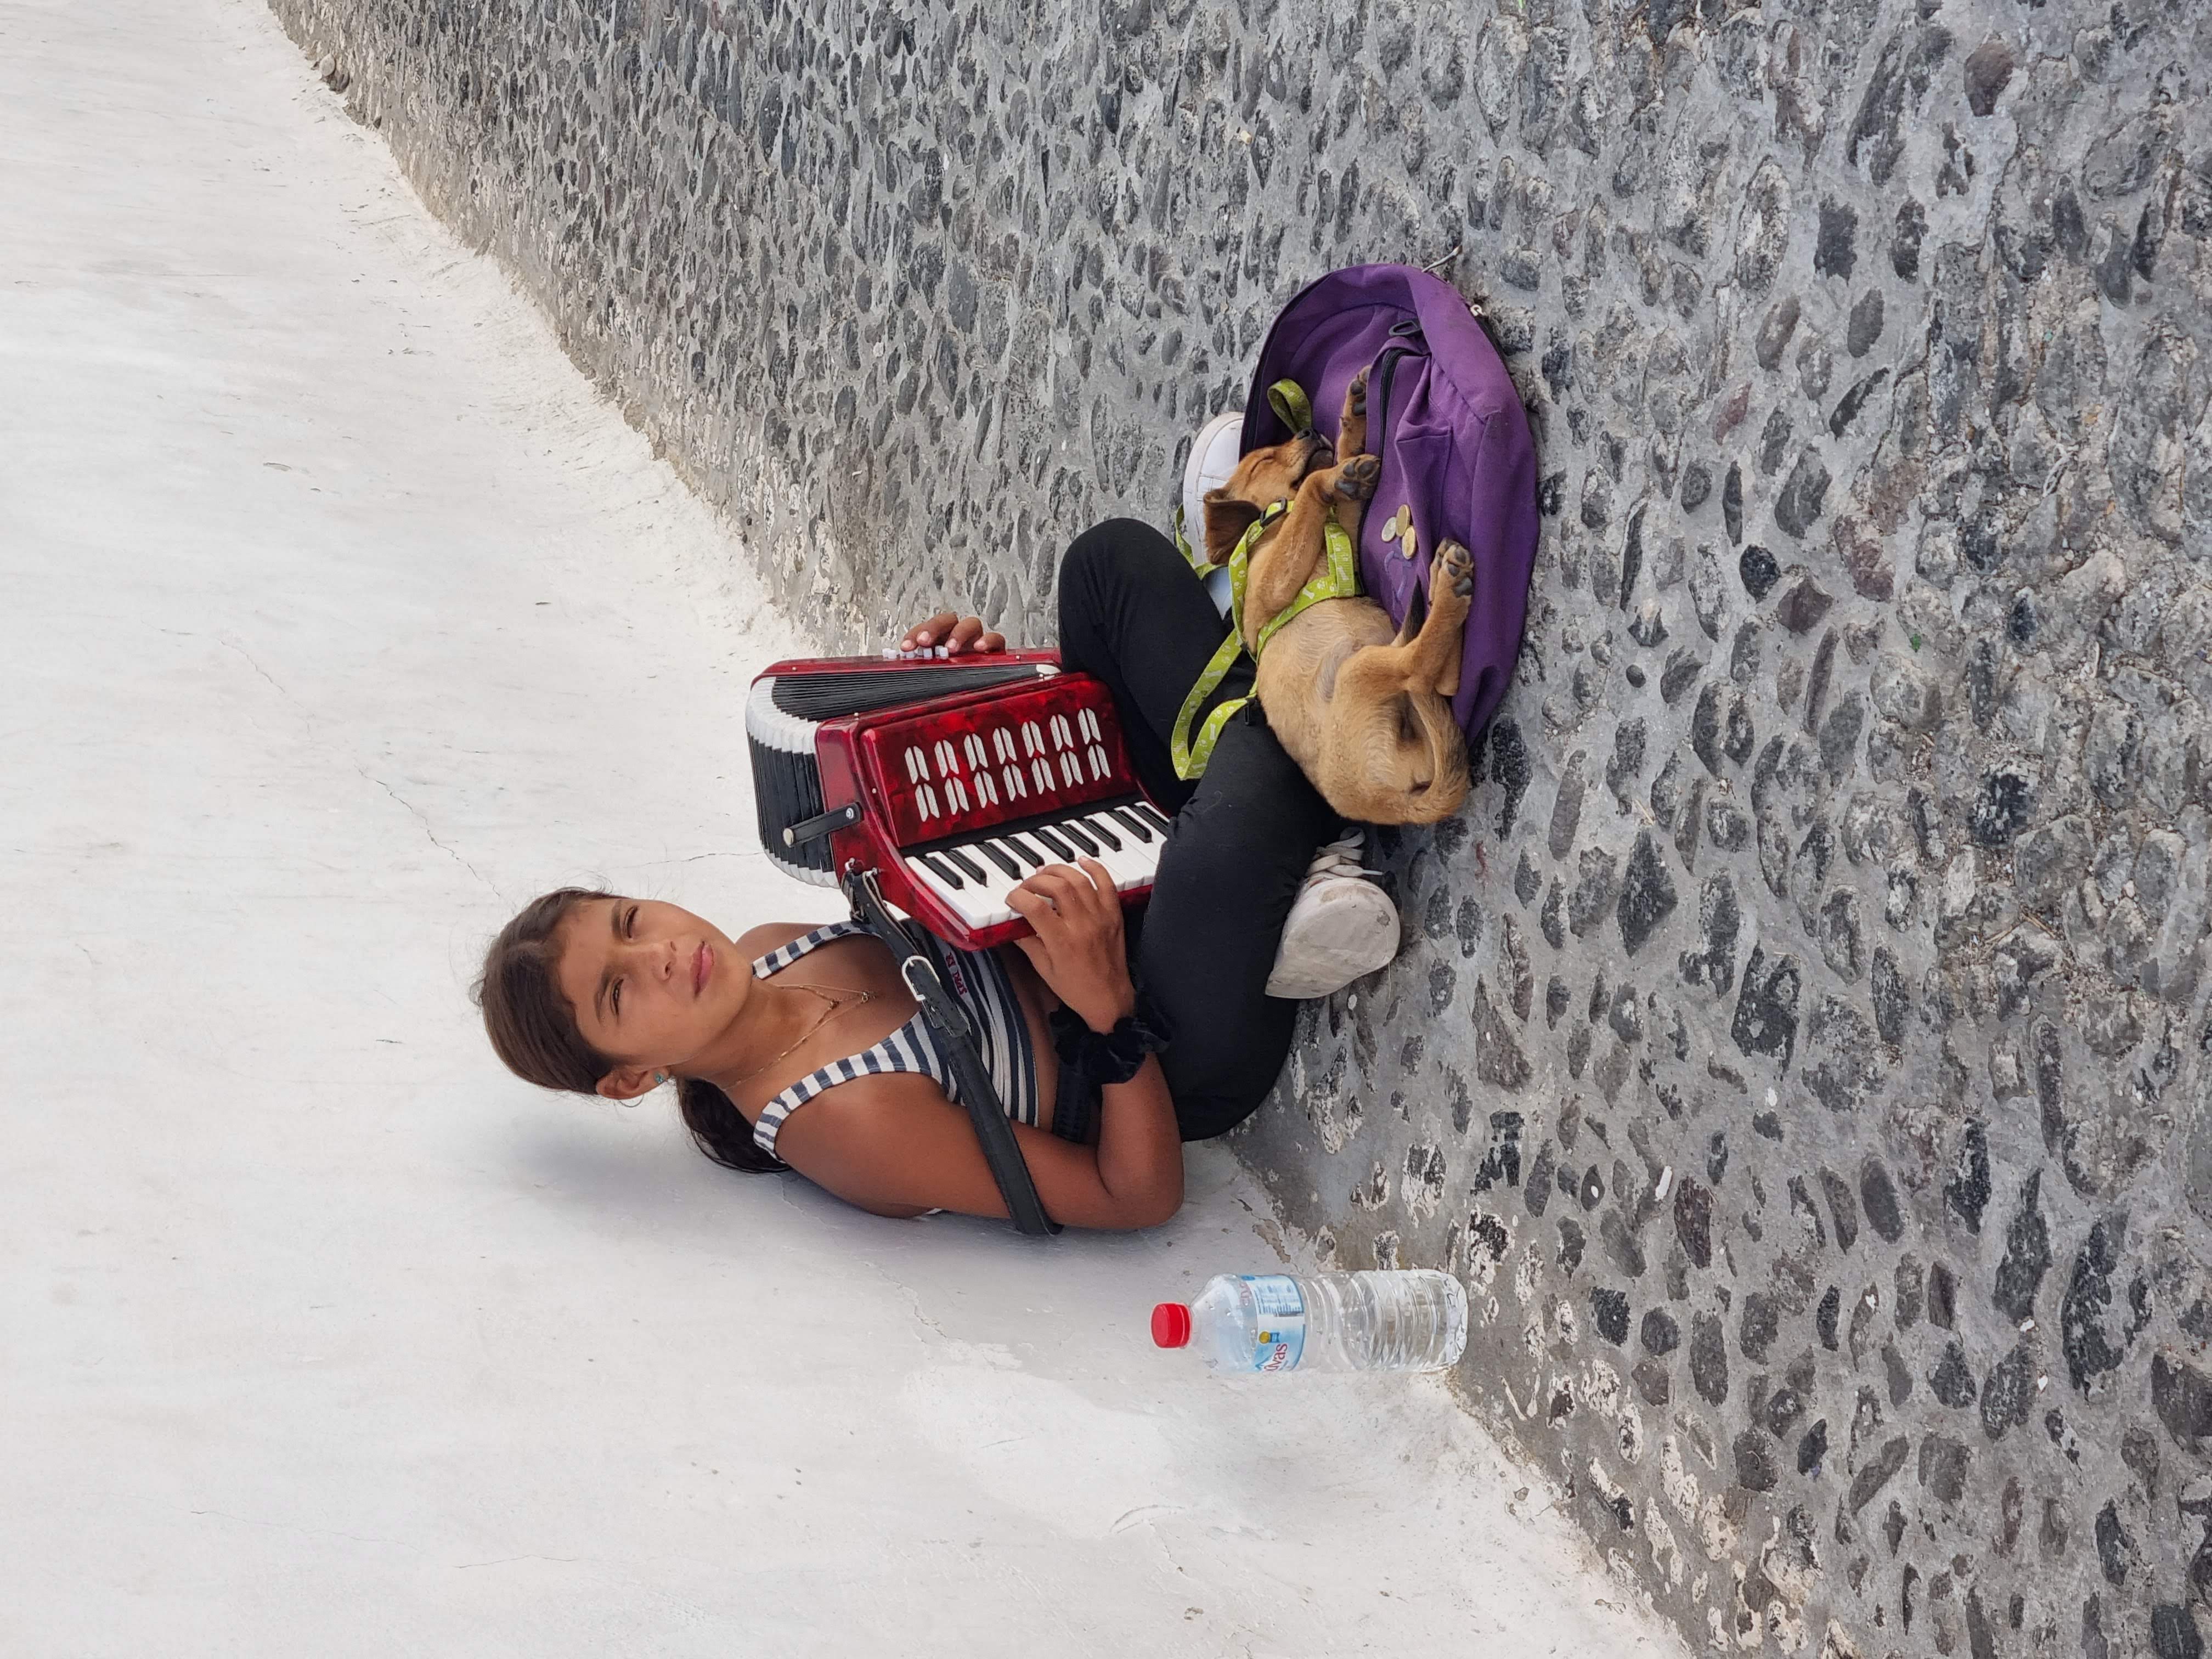 נערה באי סנטוריני מנגנת לפרנסתה את השיר מ"זורבה היווני"